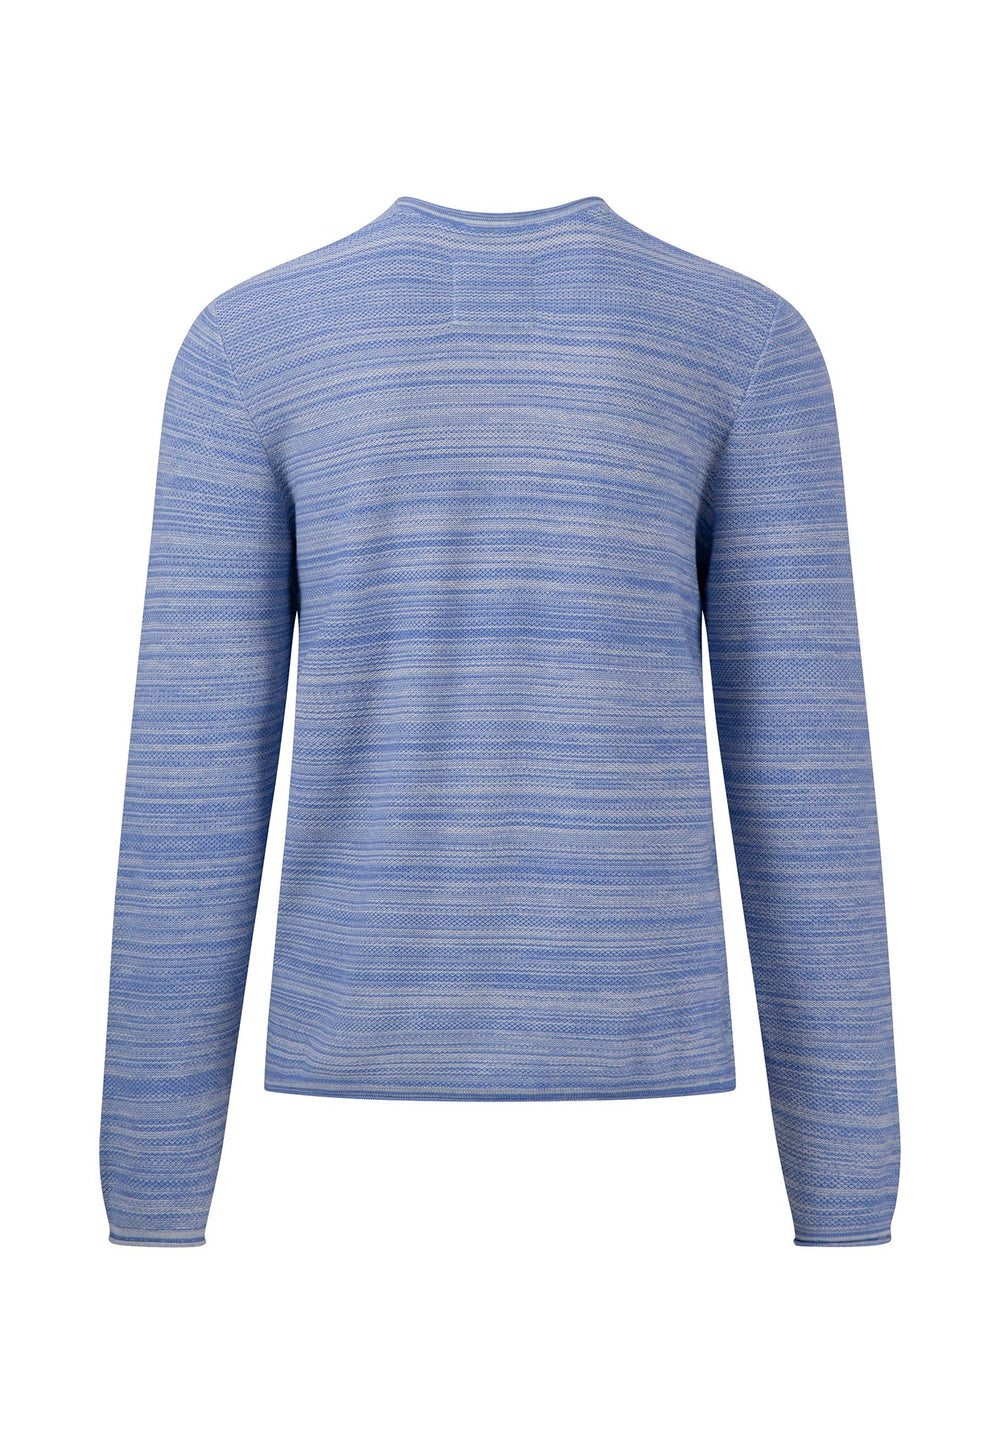 Offizieller jackets knitted Shop FYNCH-HATTON – | sweater Men\'s & Online